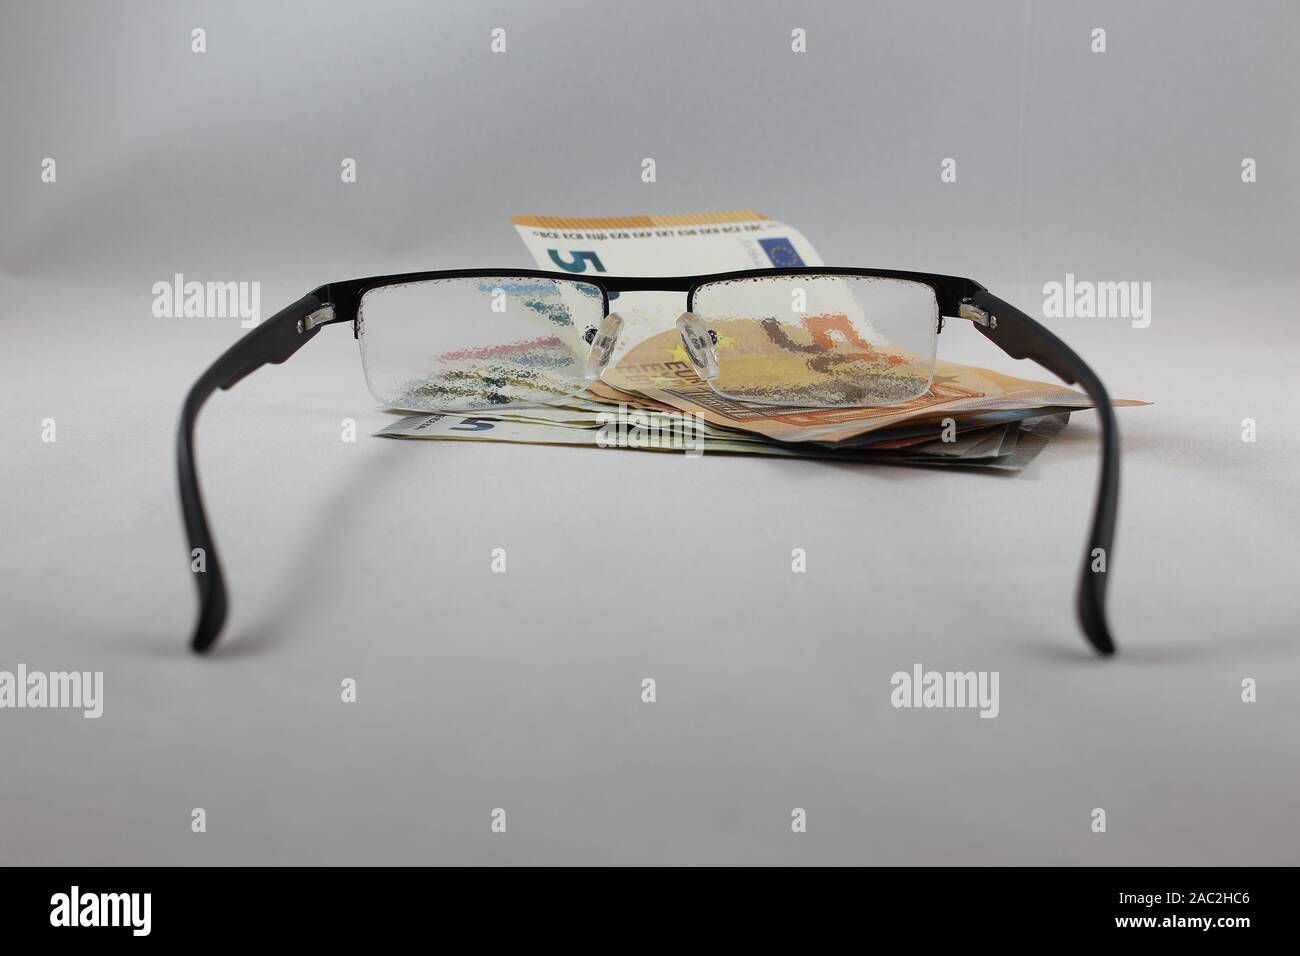 Blurry Gläser Festlegung auf Geld Konzept manchmal besser sehen ohne Brille, ausgewählte konzentrieren sich auf das Geld Stockfoto